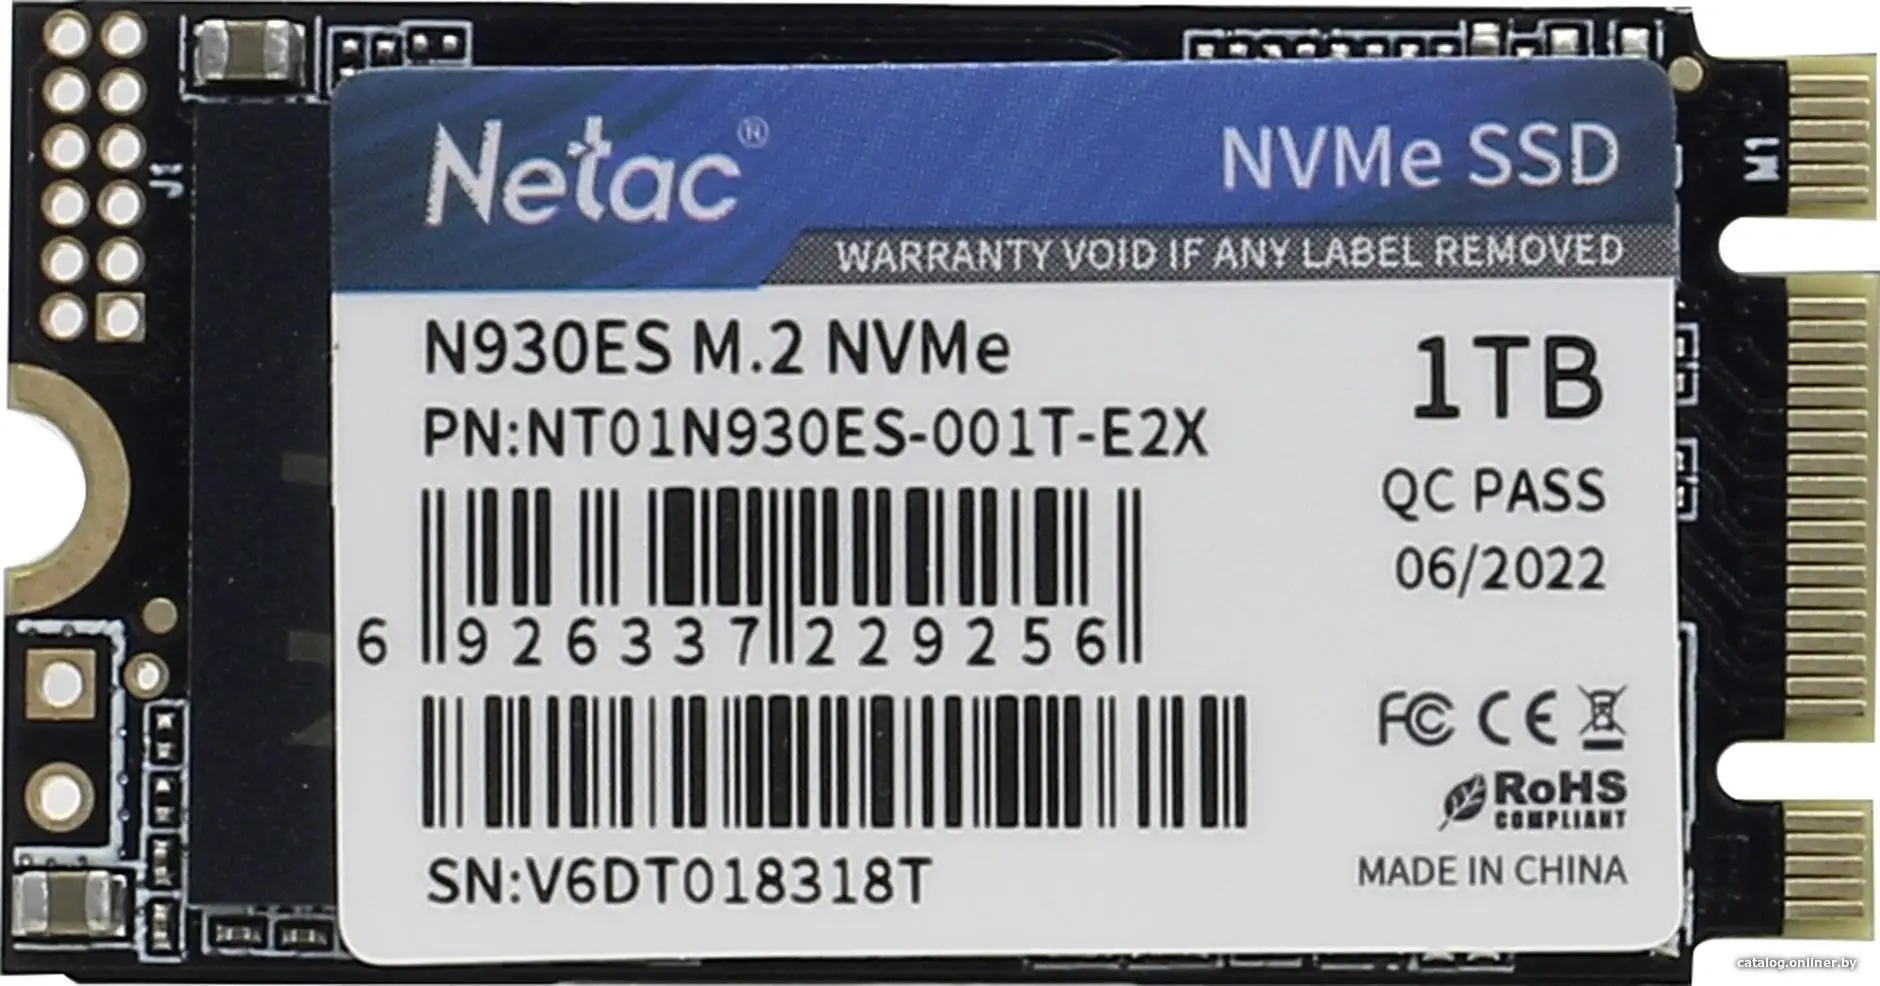 Купить Netac SSD N930ES PCIe 3 x2 M.2 2242 NVMe 3D NAND 1TB, R/W up to 1650/1500MB/s, 3y wty, цена, опт и розница